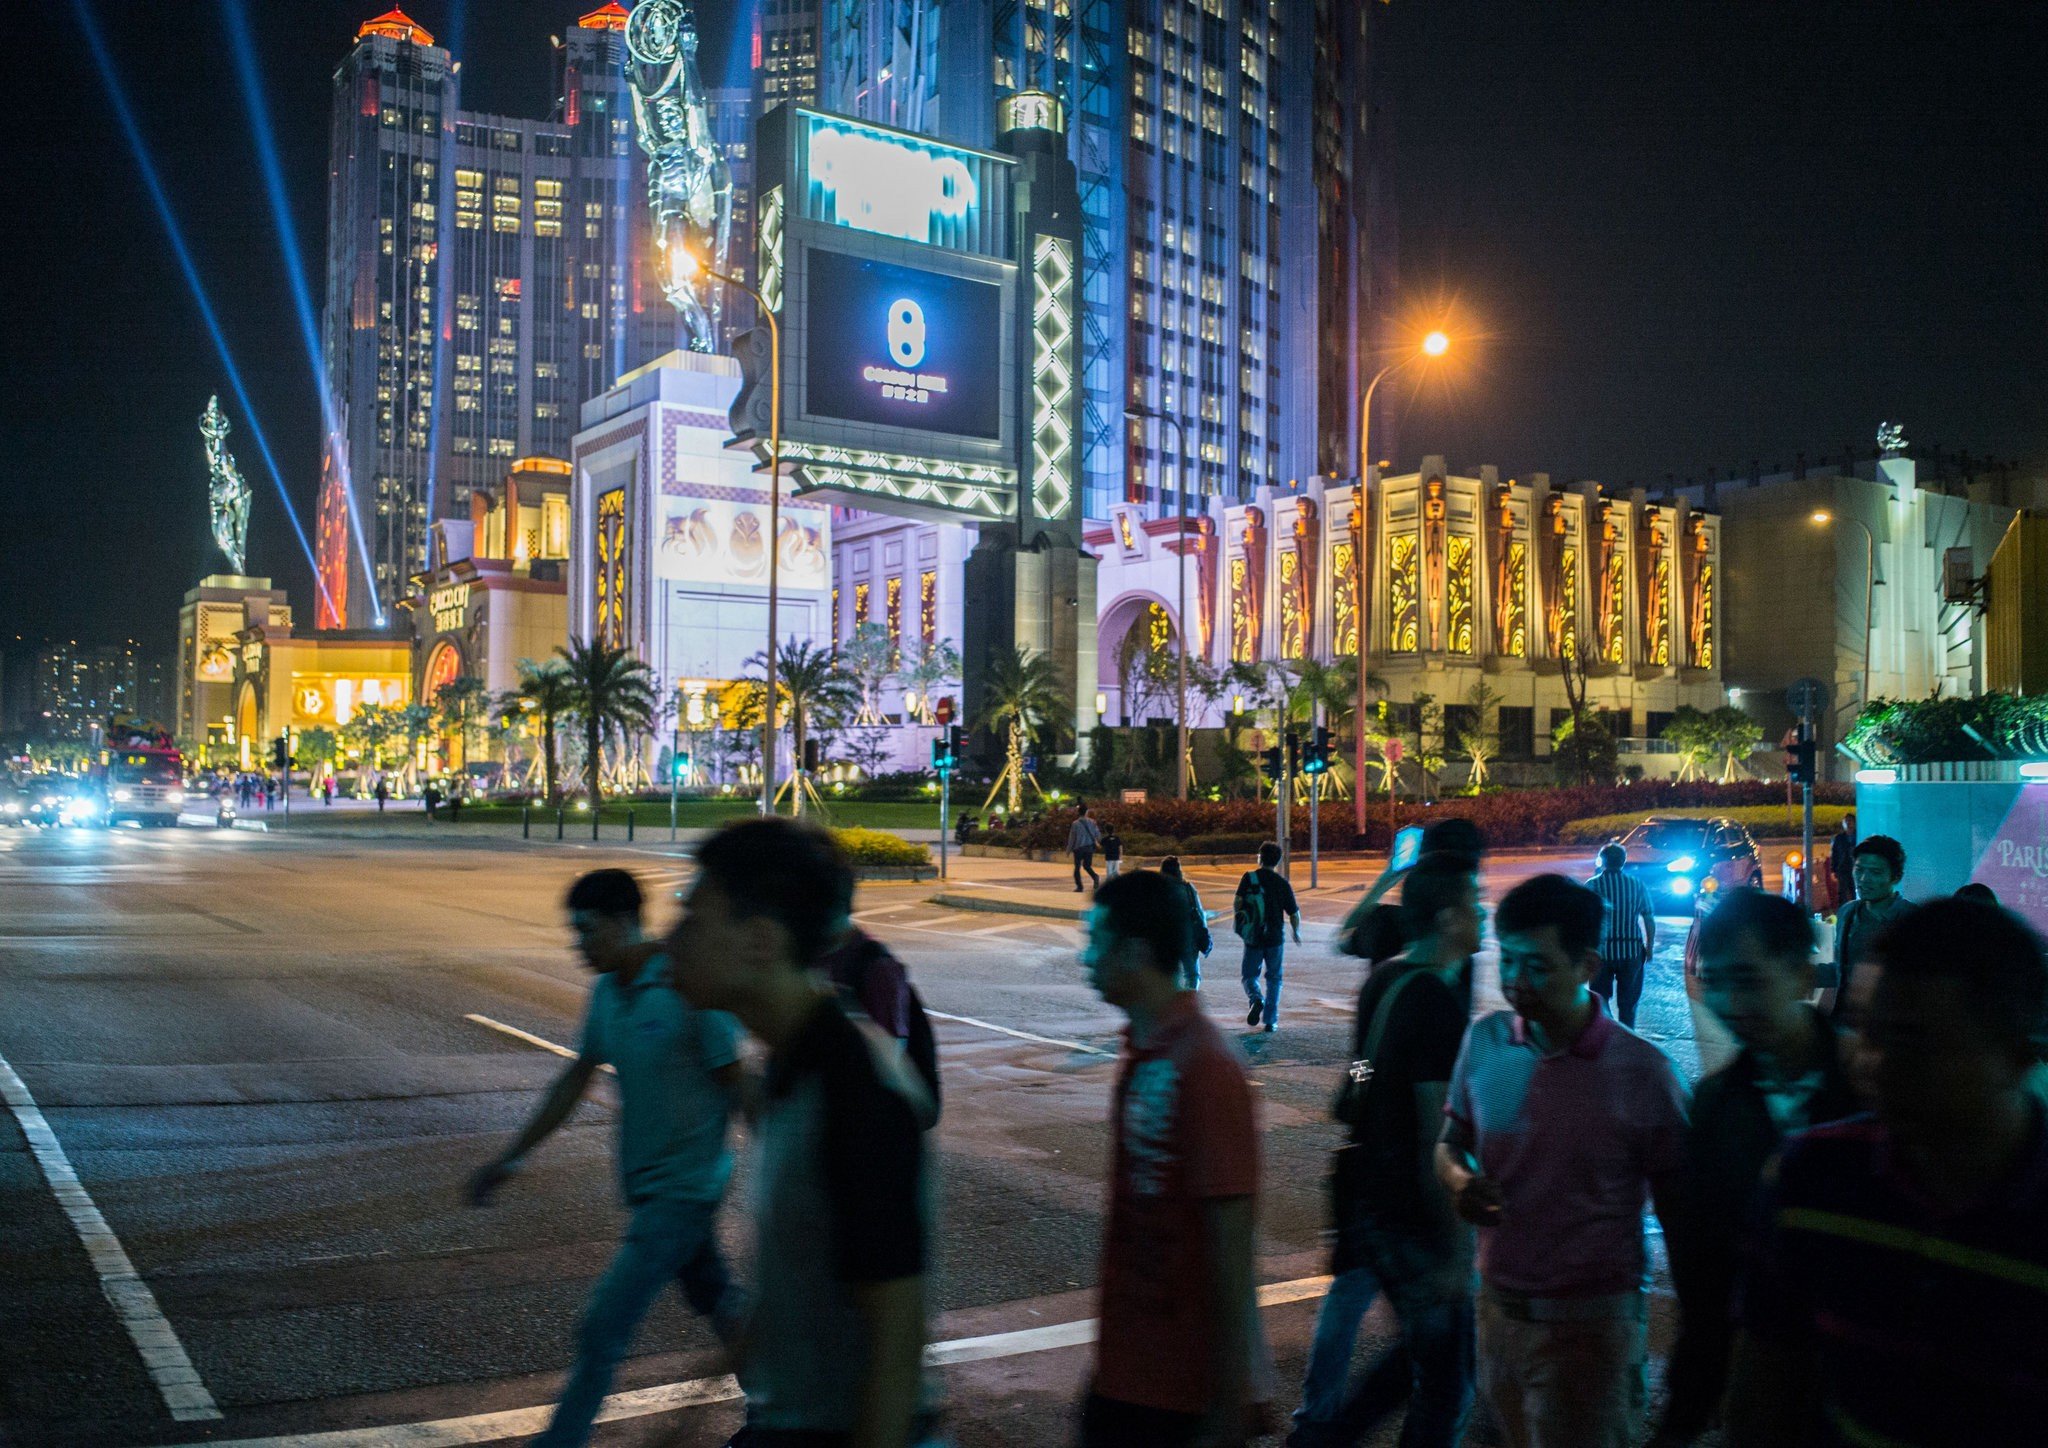 Macau casino gaming revenue